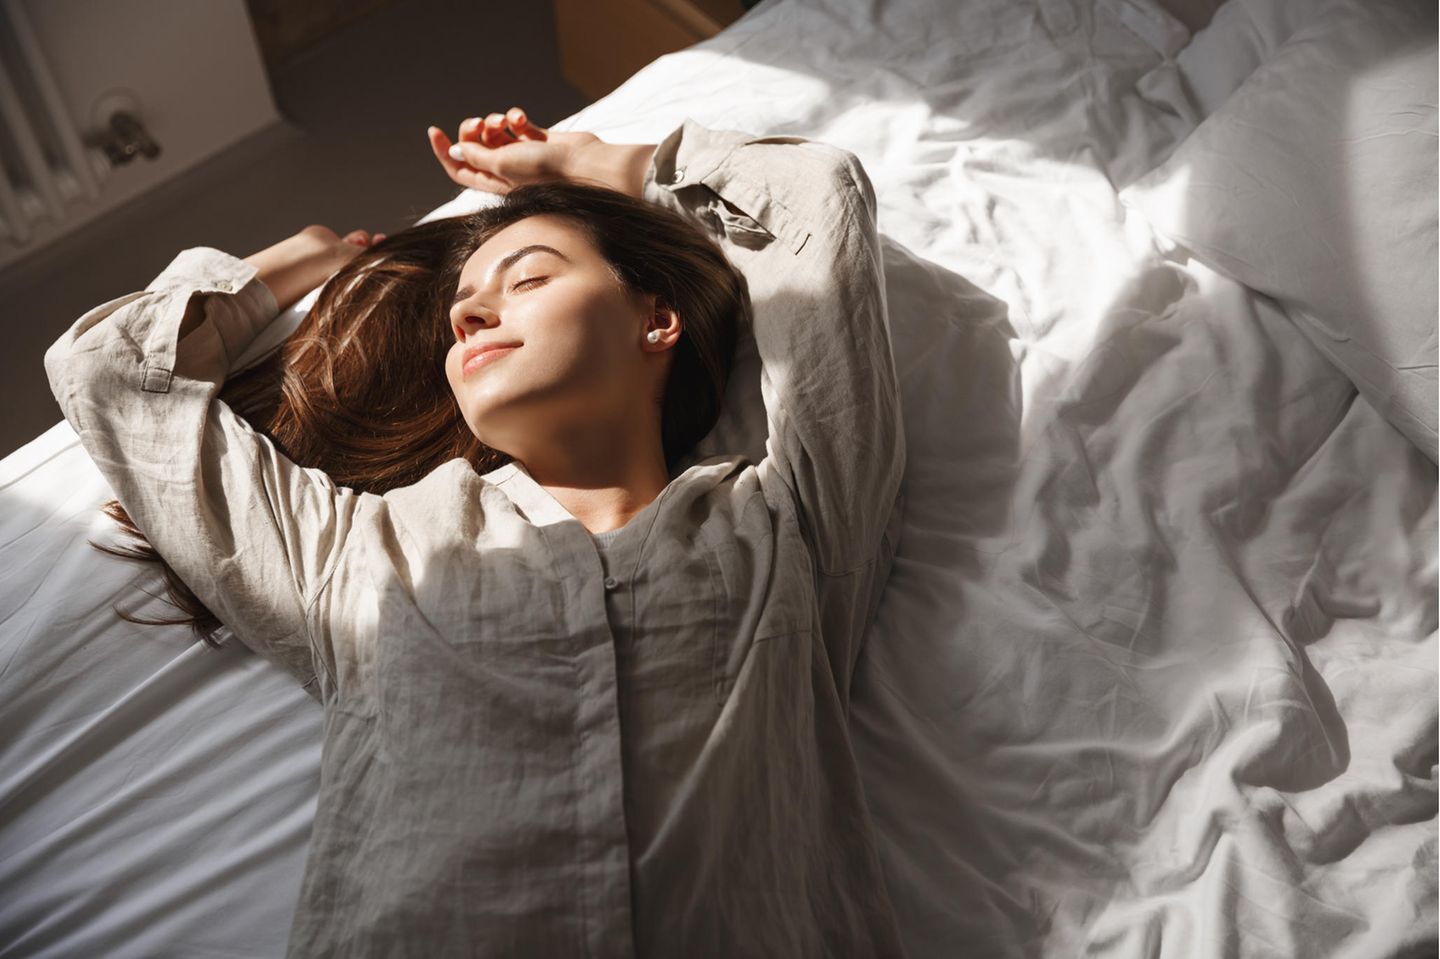 Brünette Frau liegt im Leinen-Pyjama auf Bett mit weißen Laken, Sonne strahlt ihr ins Gesicht